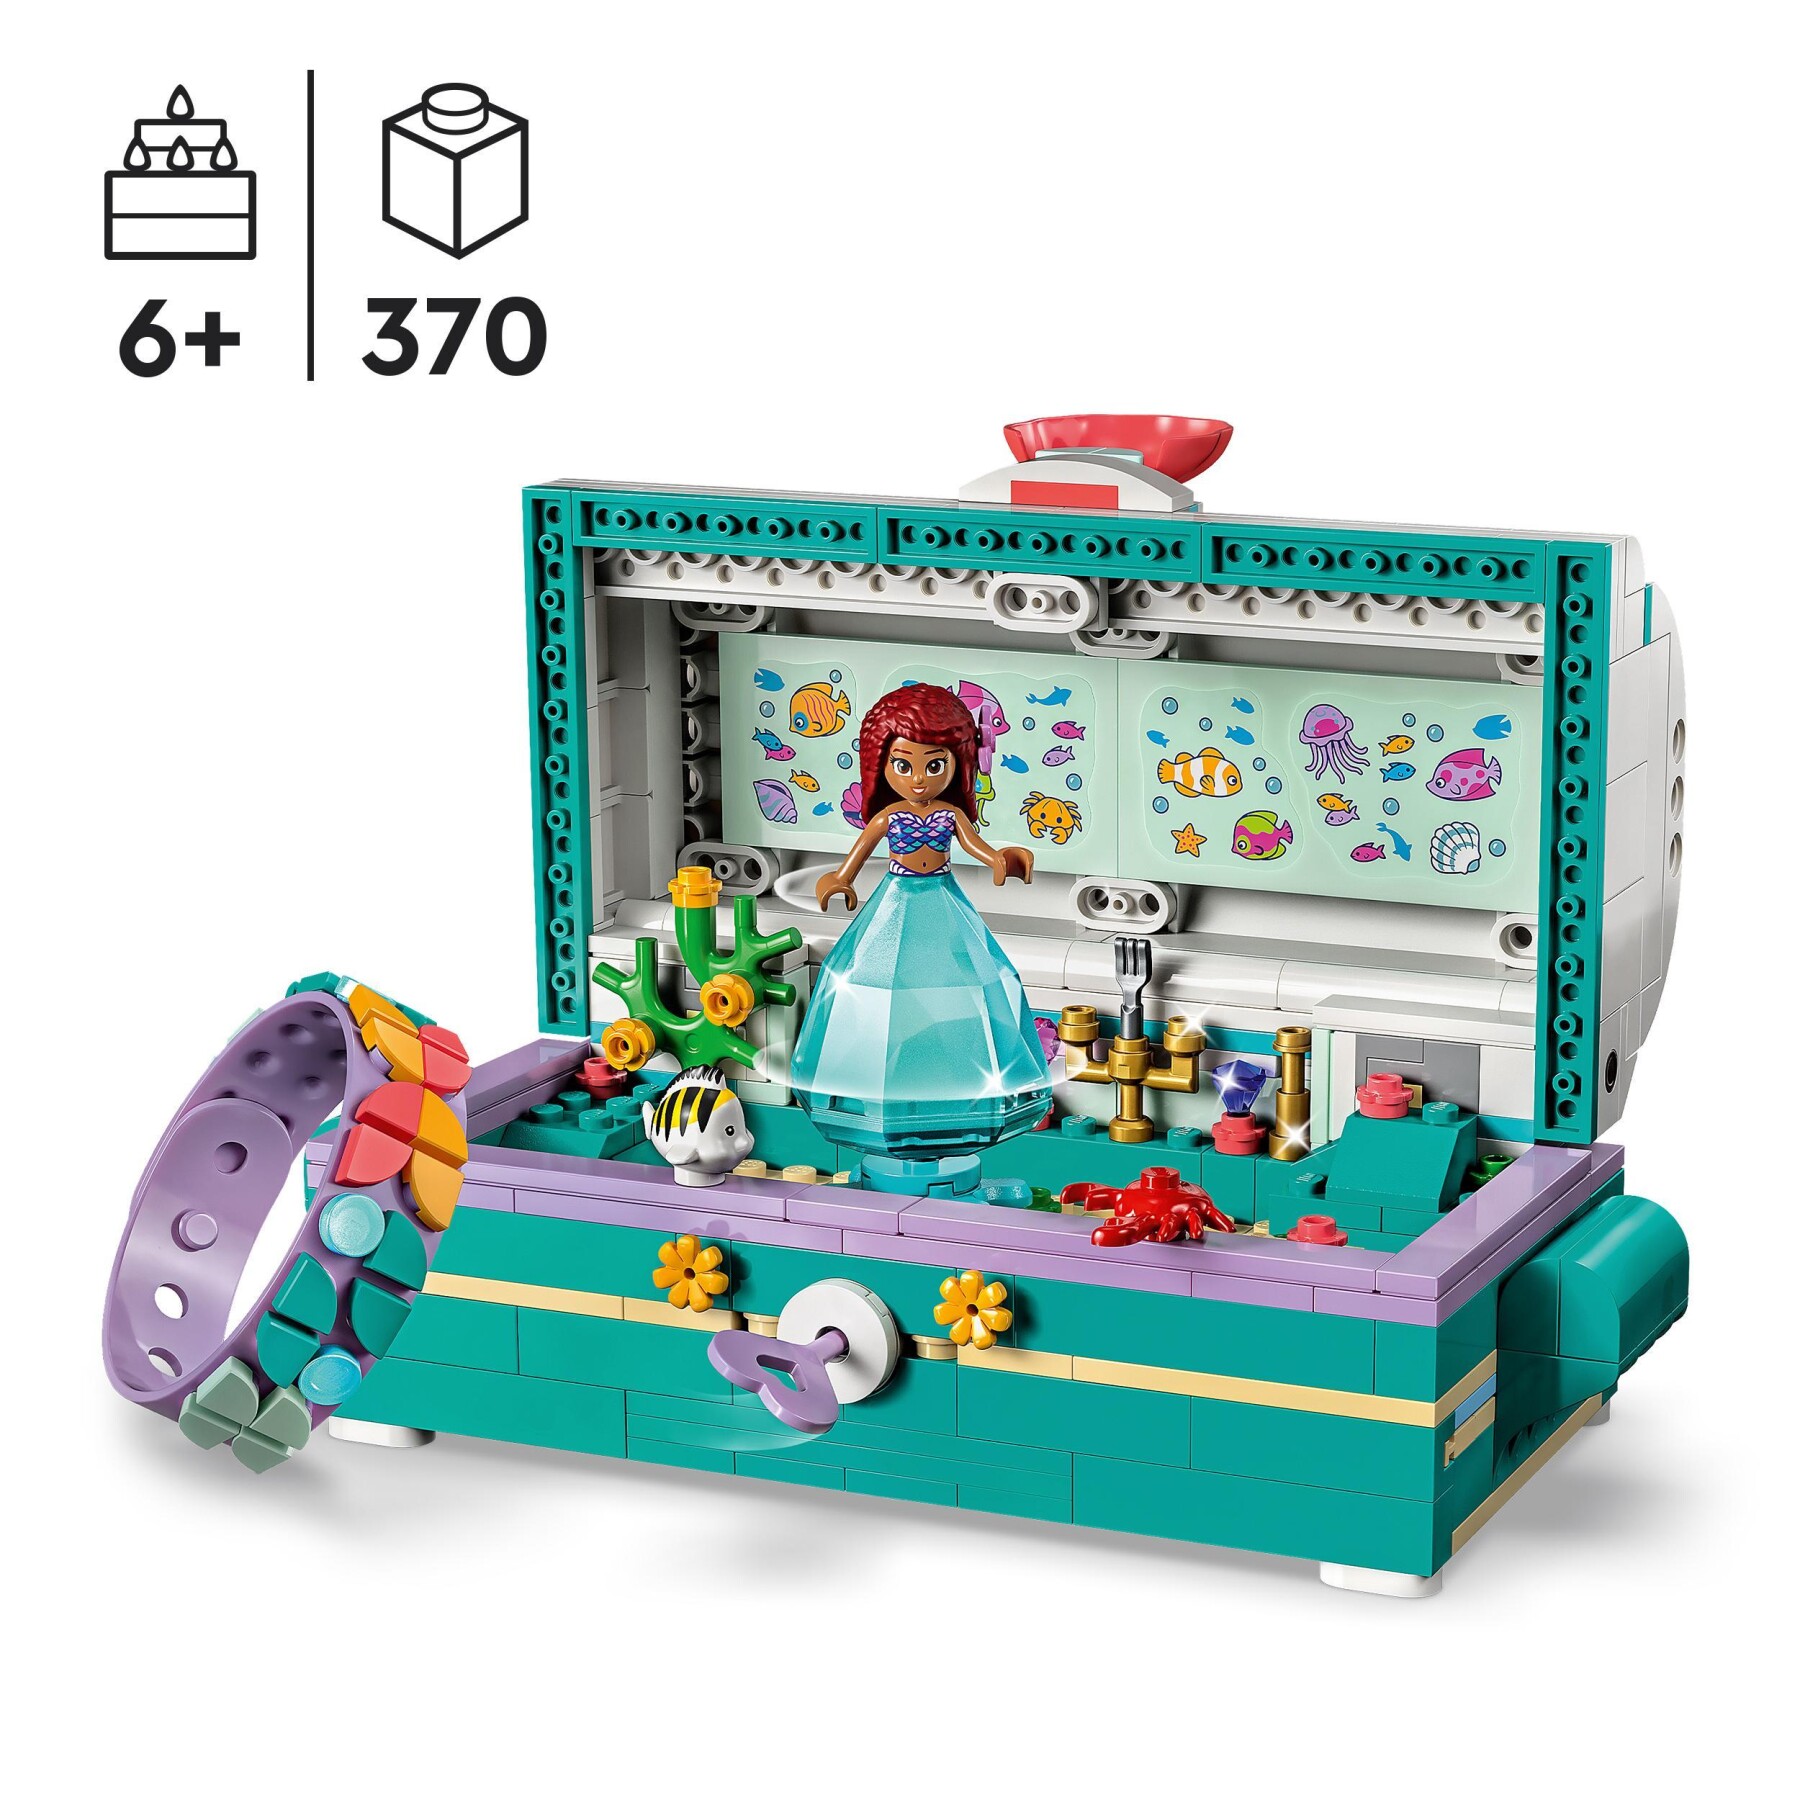 Valigetta mattoncini Lego Ariel, la sirenetta Disney, per bambini